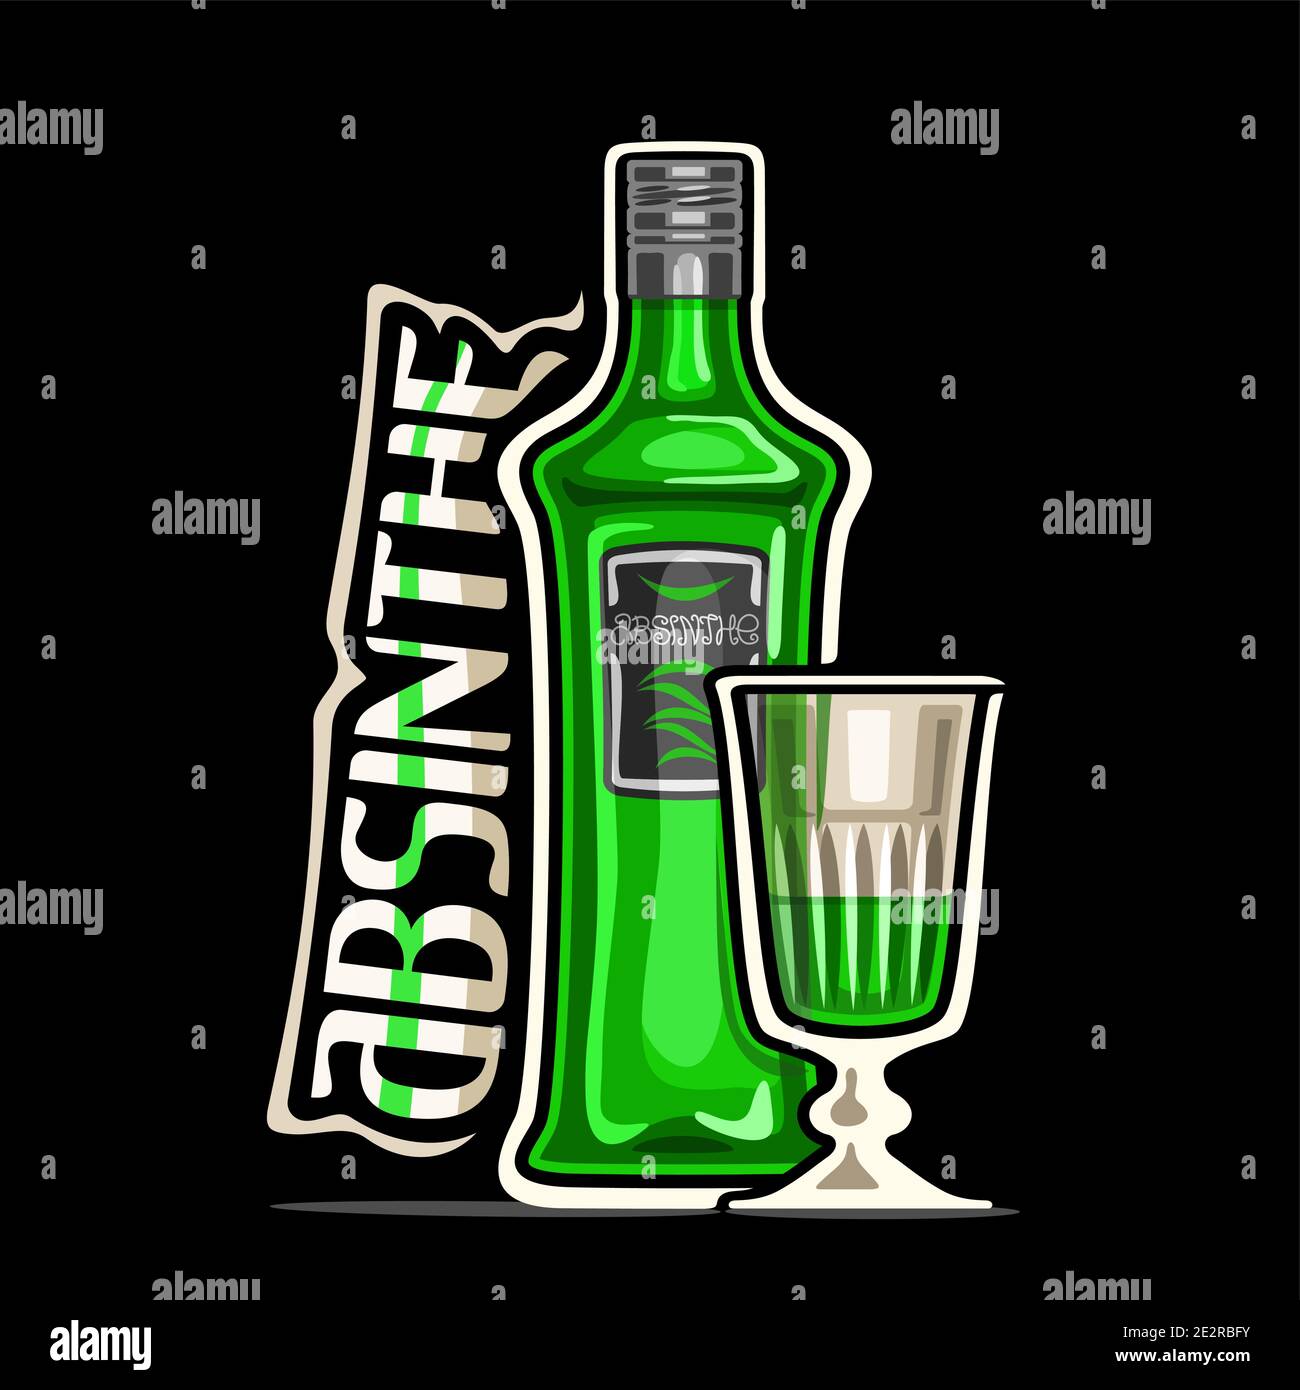 Logo vettoriale per Absinthe, illustrazione di contorno di bottiglia classica verde con etichetta decorativa e mezzo cartone pieno vetro cordiale, placard quadrata con Illustrazione Vettoriale